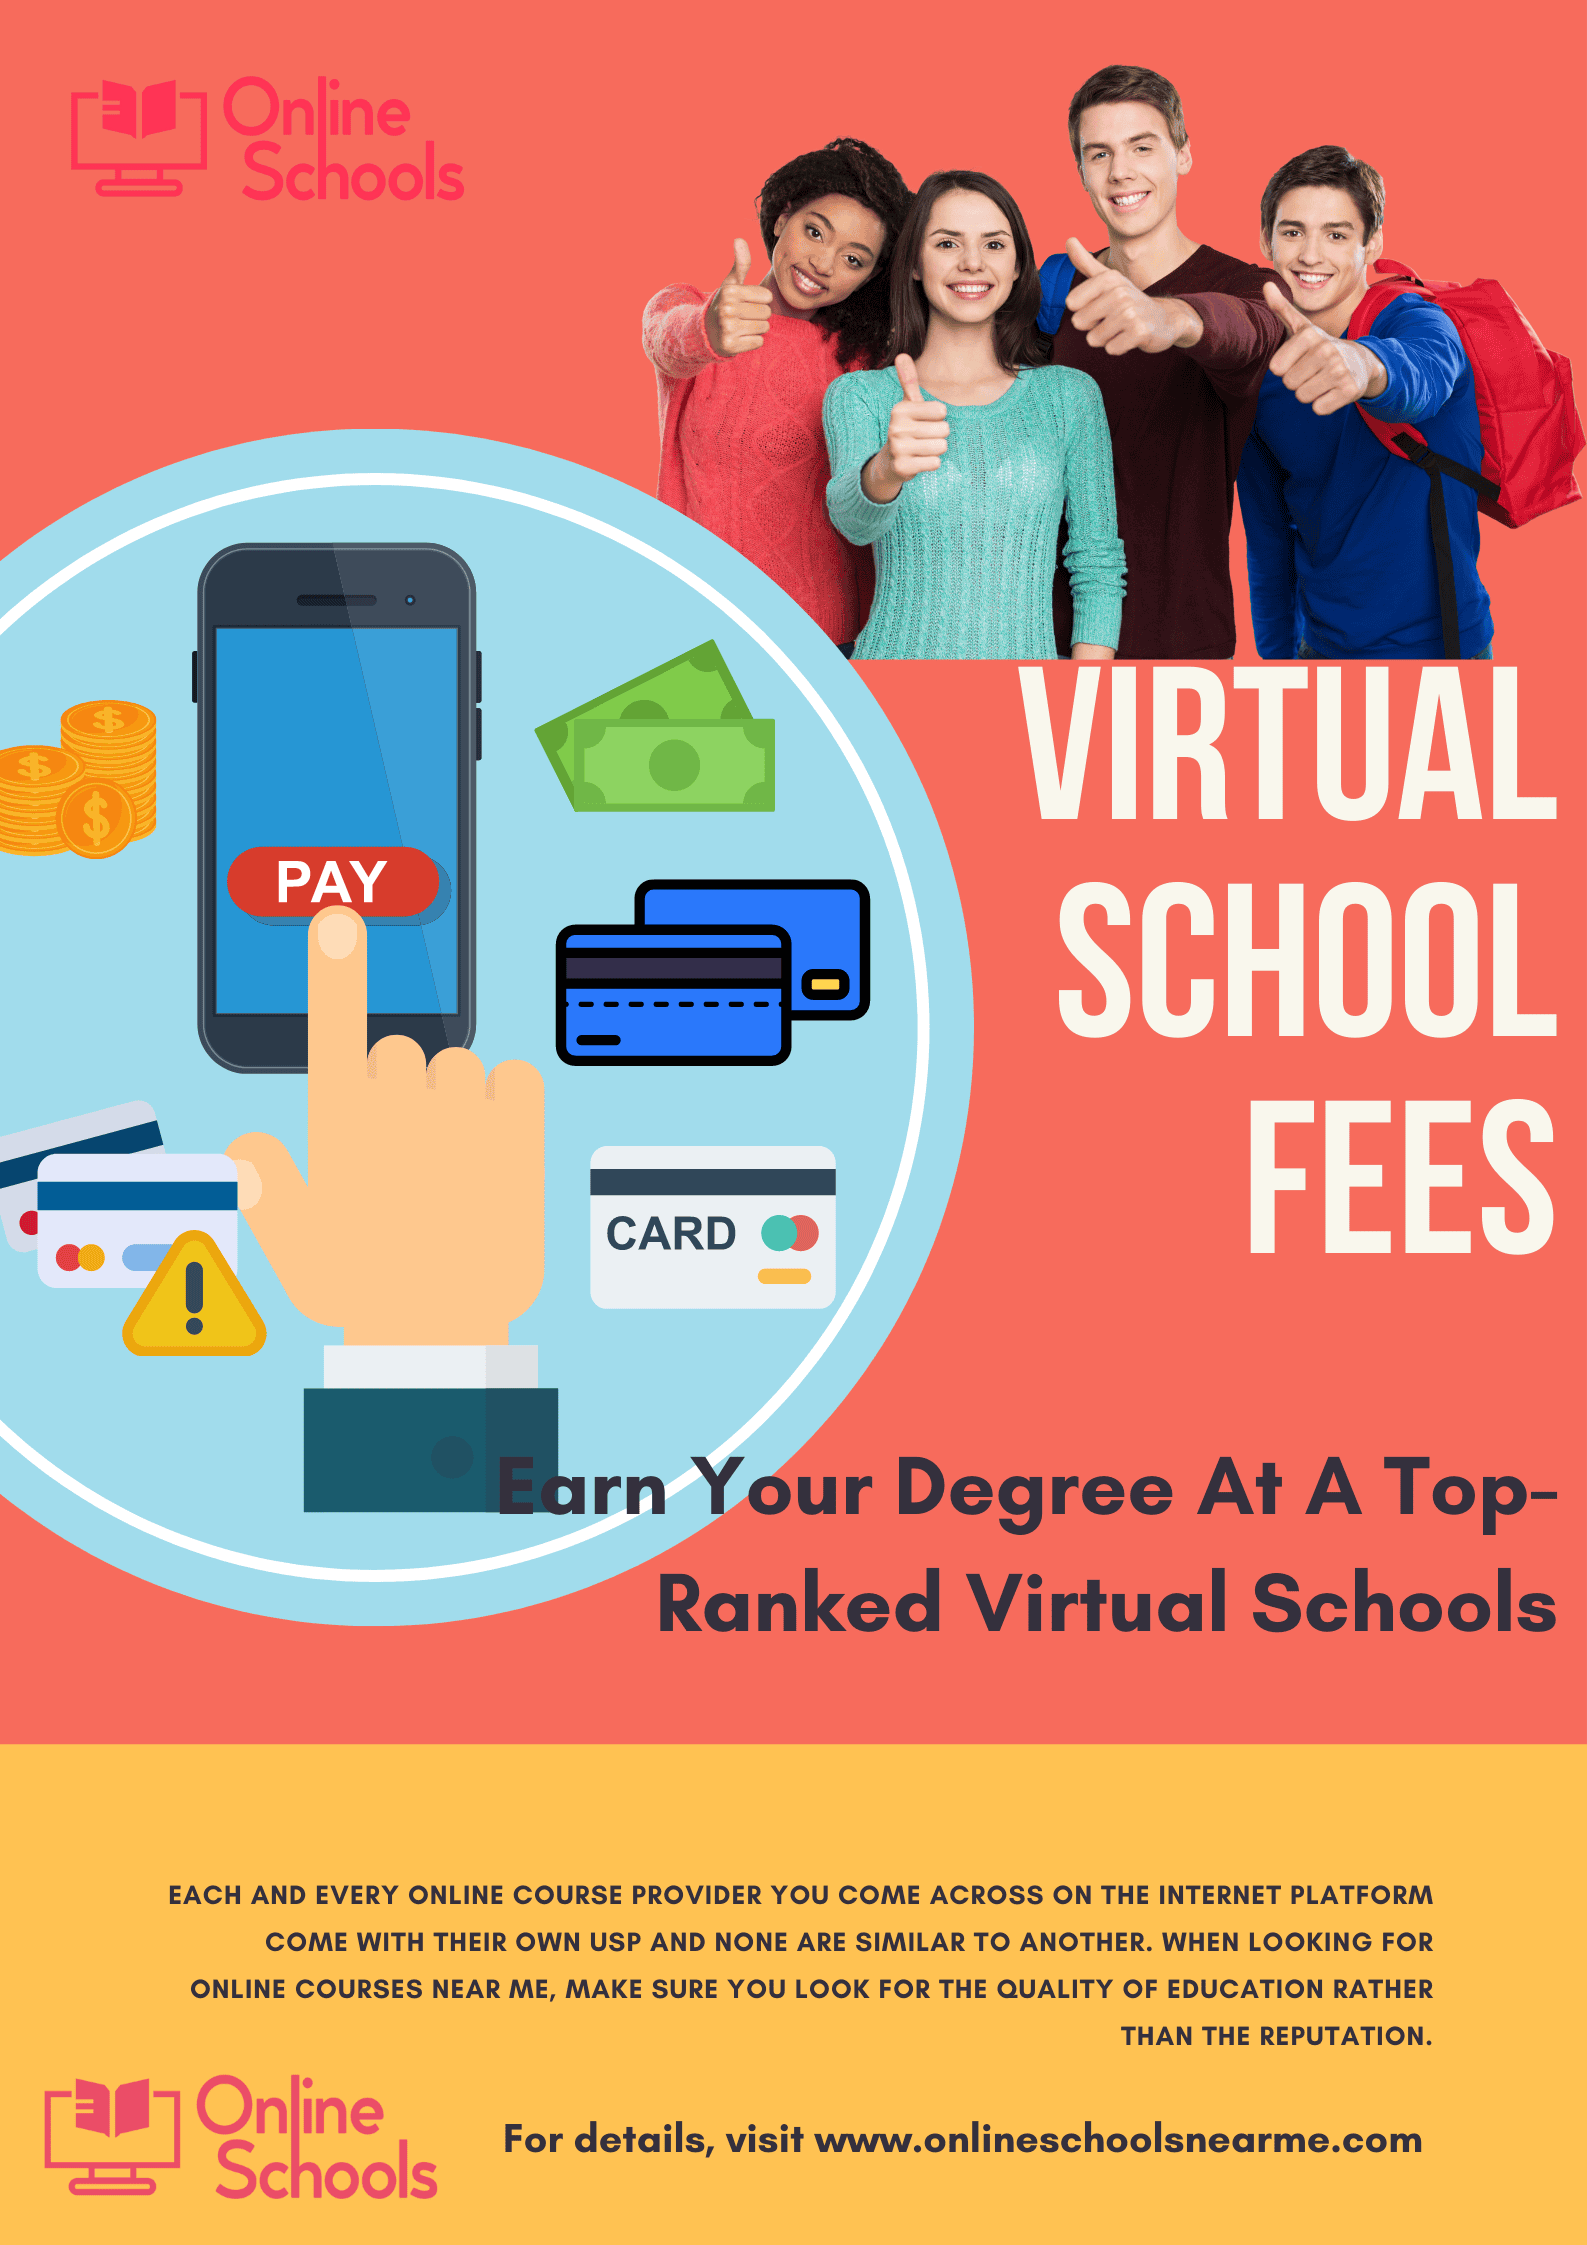 virtual school fees